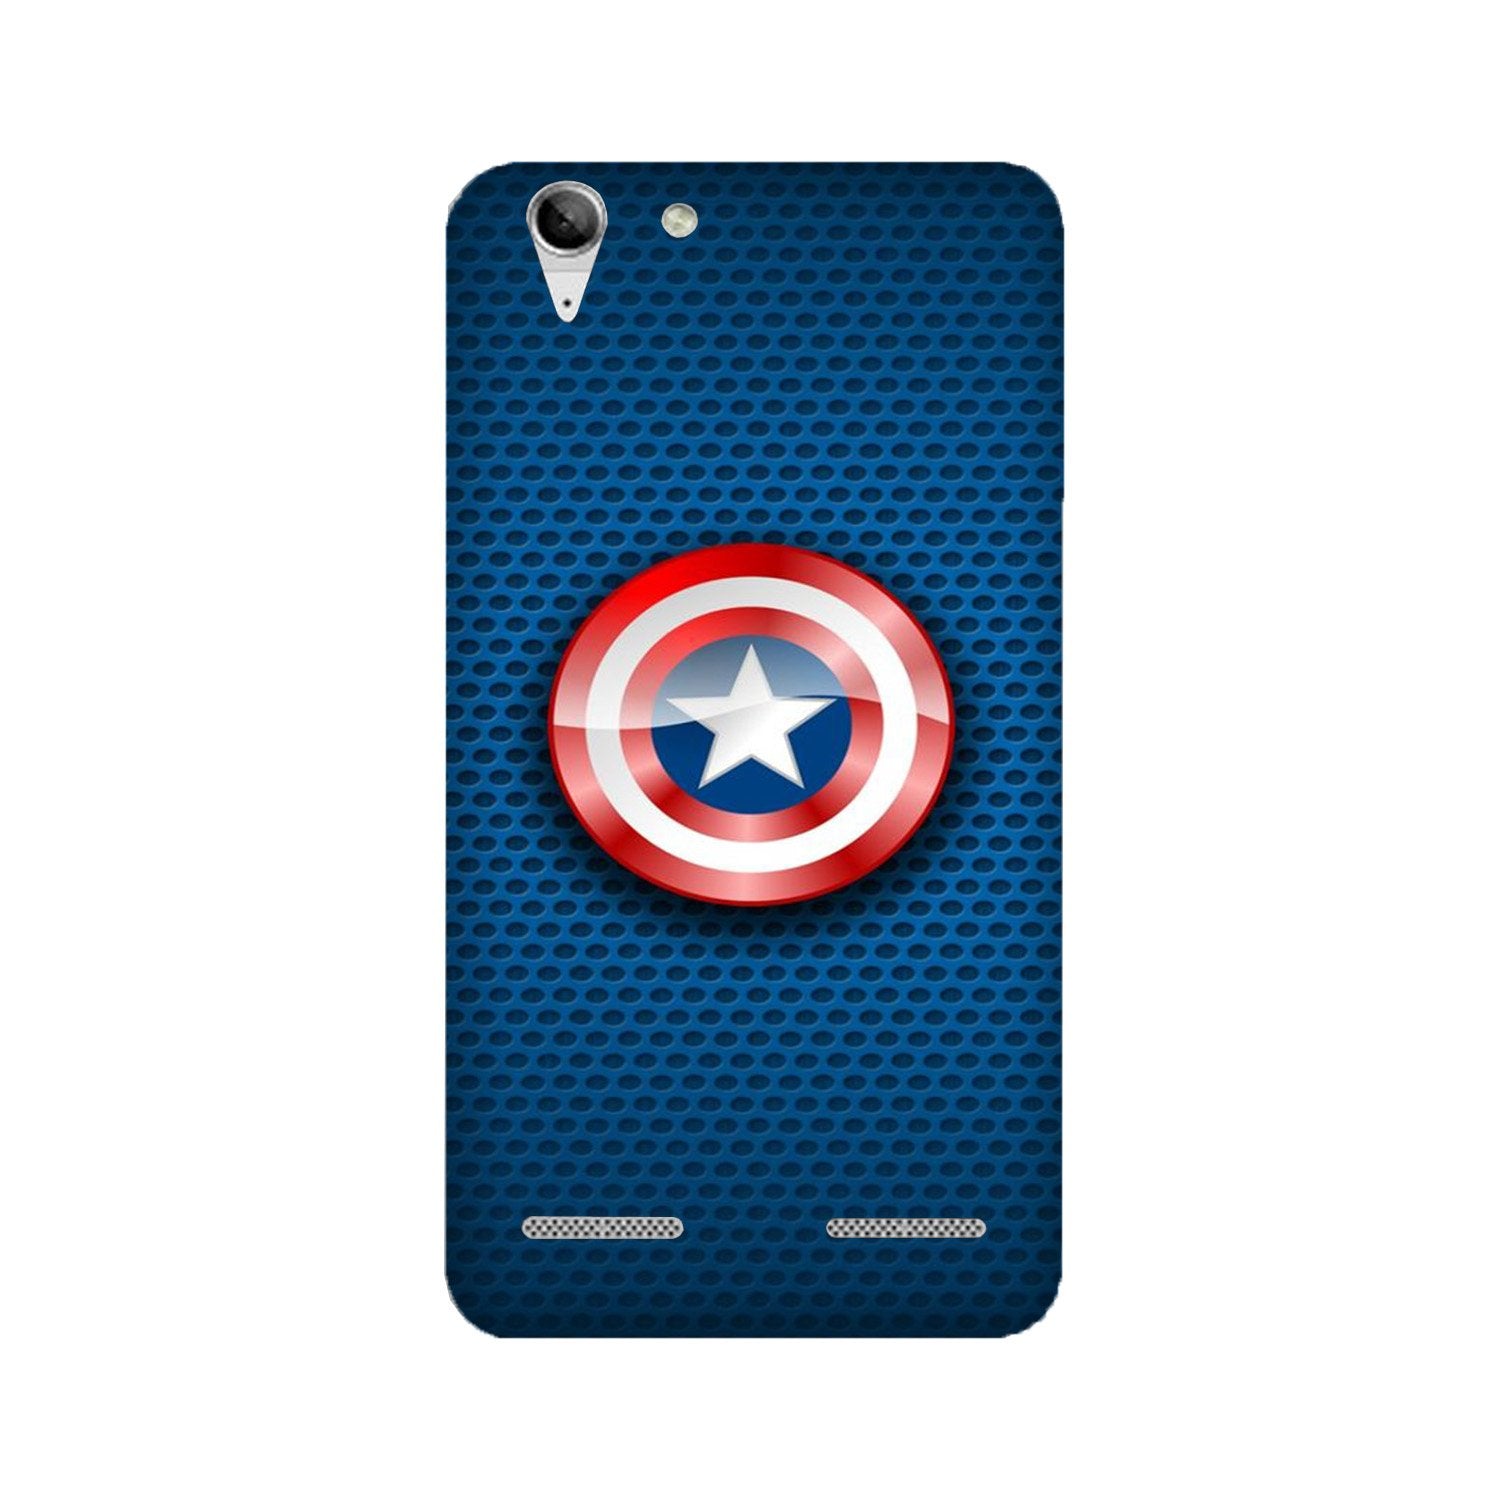 Captain America Shield Case for Lenovo K5 / K5 Plus (Design No. 253)